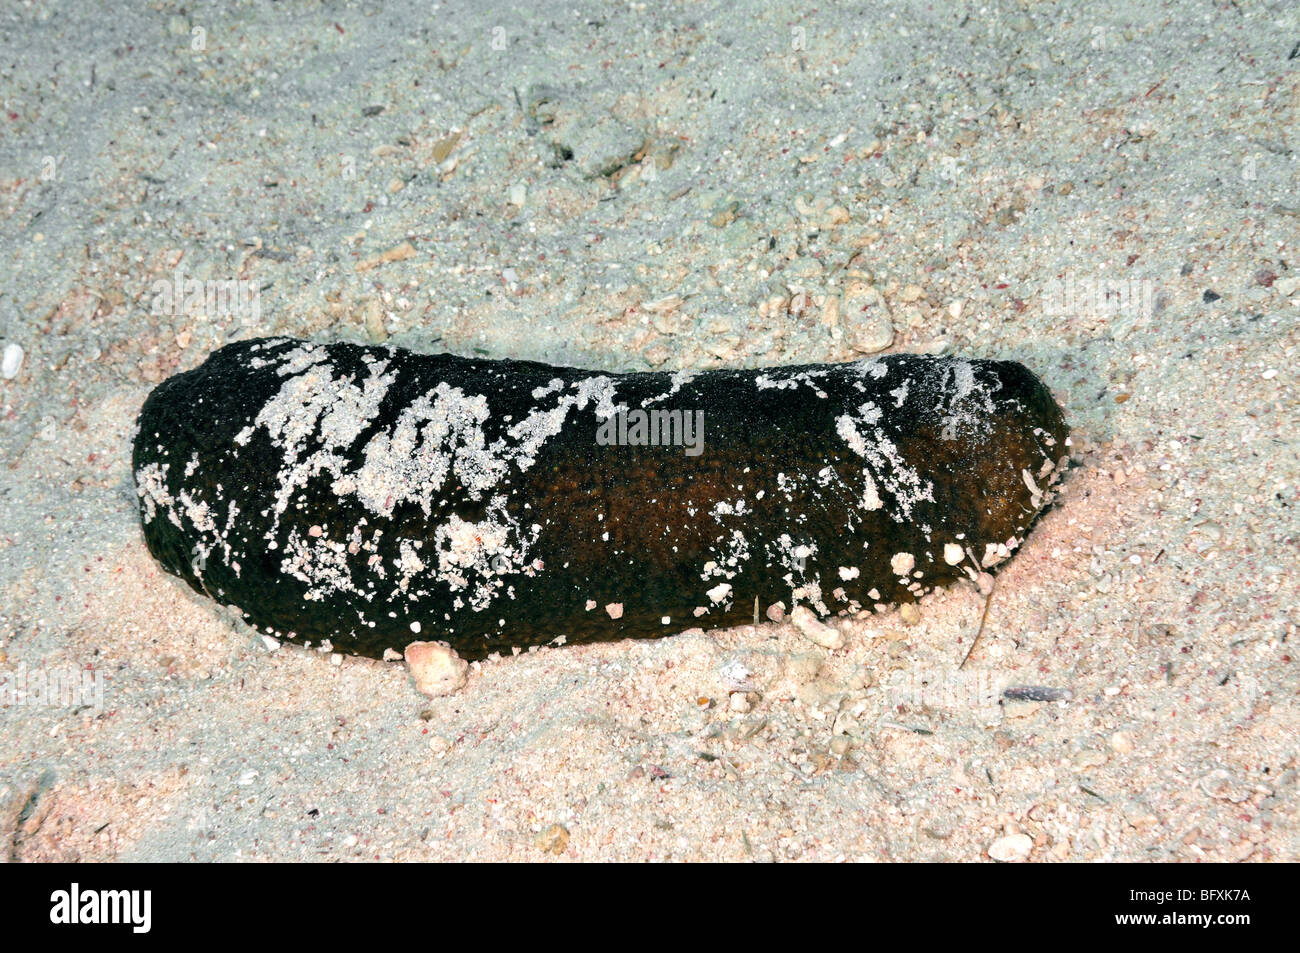 Black 'sea cucumber', Holothuria atra, Stock Photo